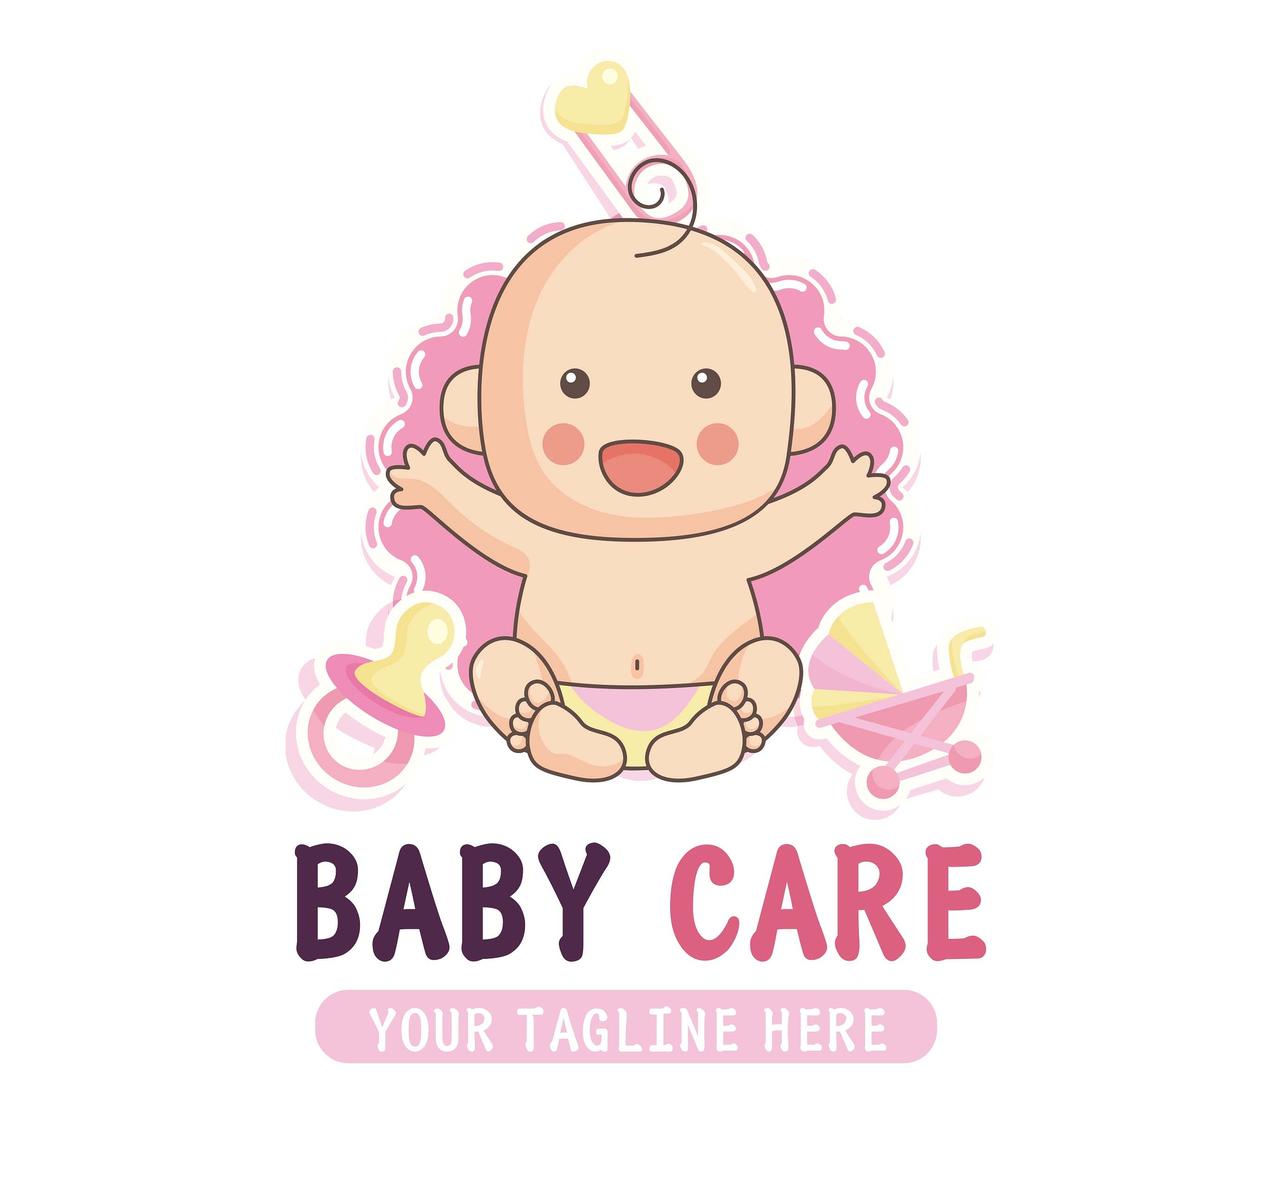 粉色卡通简约风格可爱婴儿宝贝logo